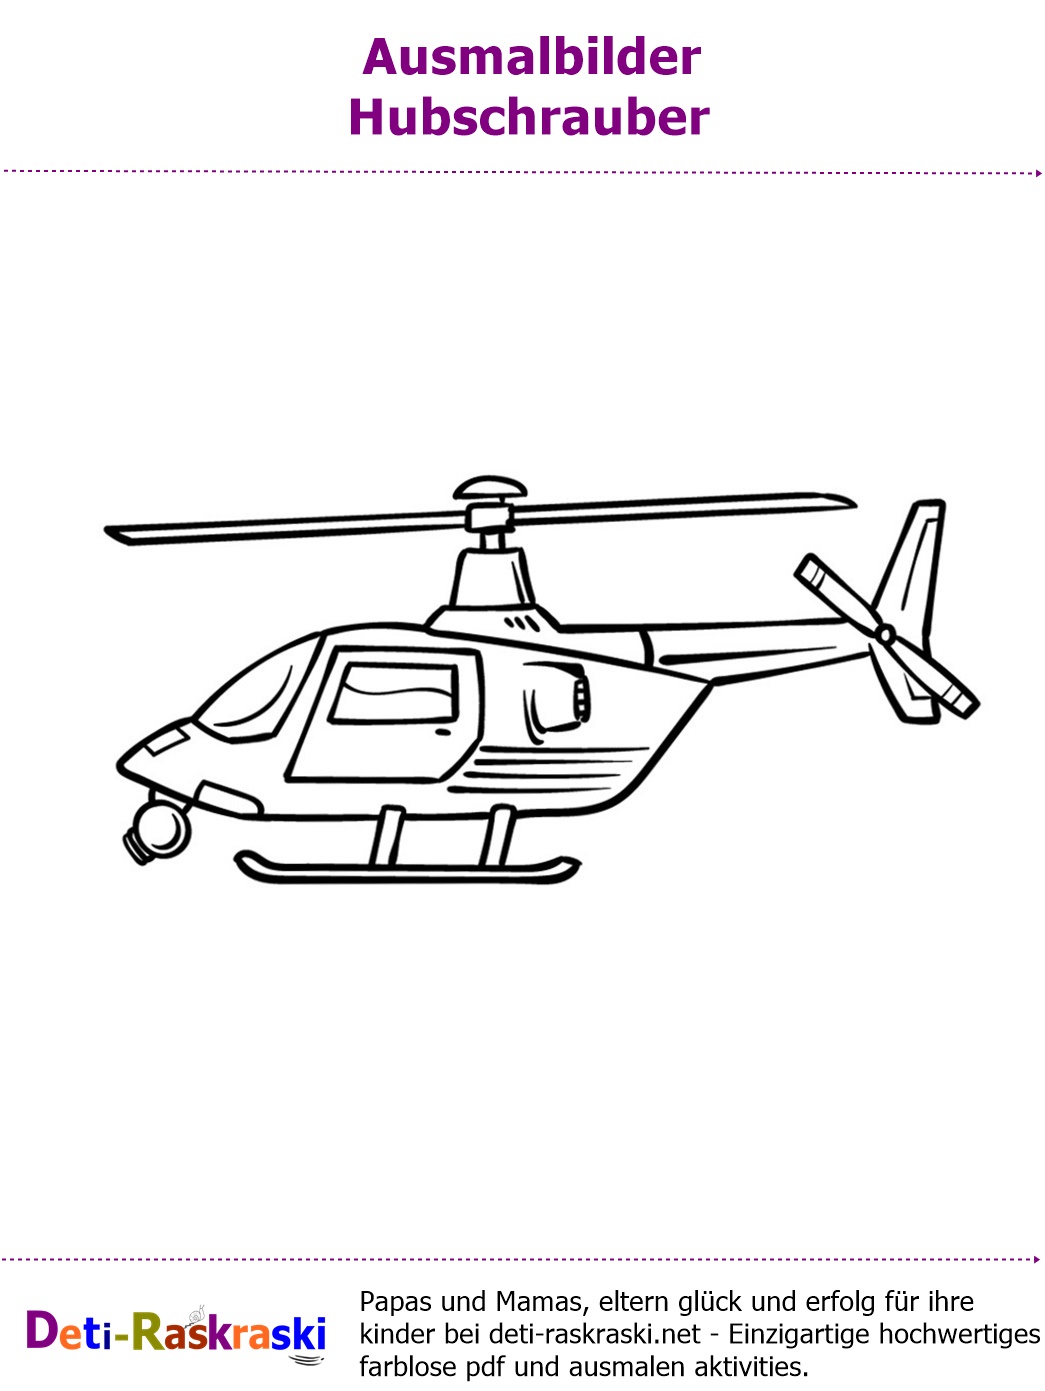 Flugzeuge Hubschrauber Ausmalbilder Kostenlos Zum Drucken oder Downloaden